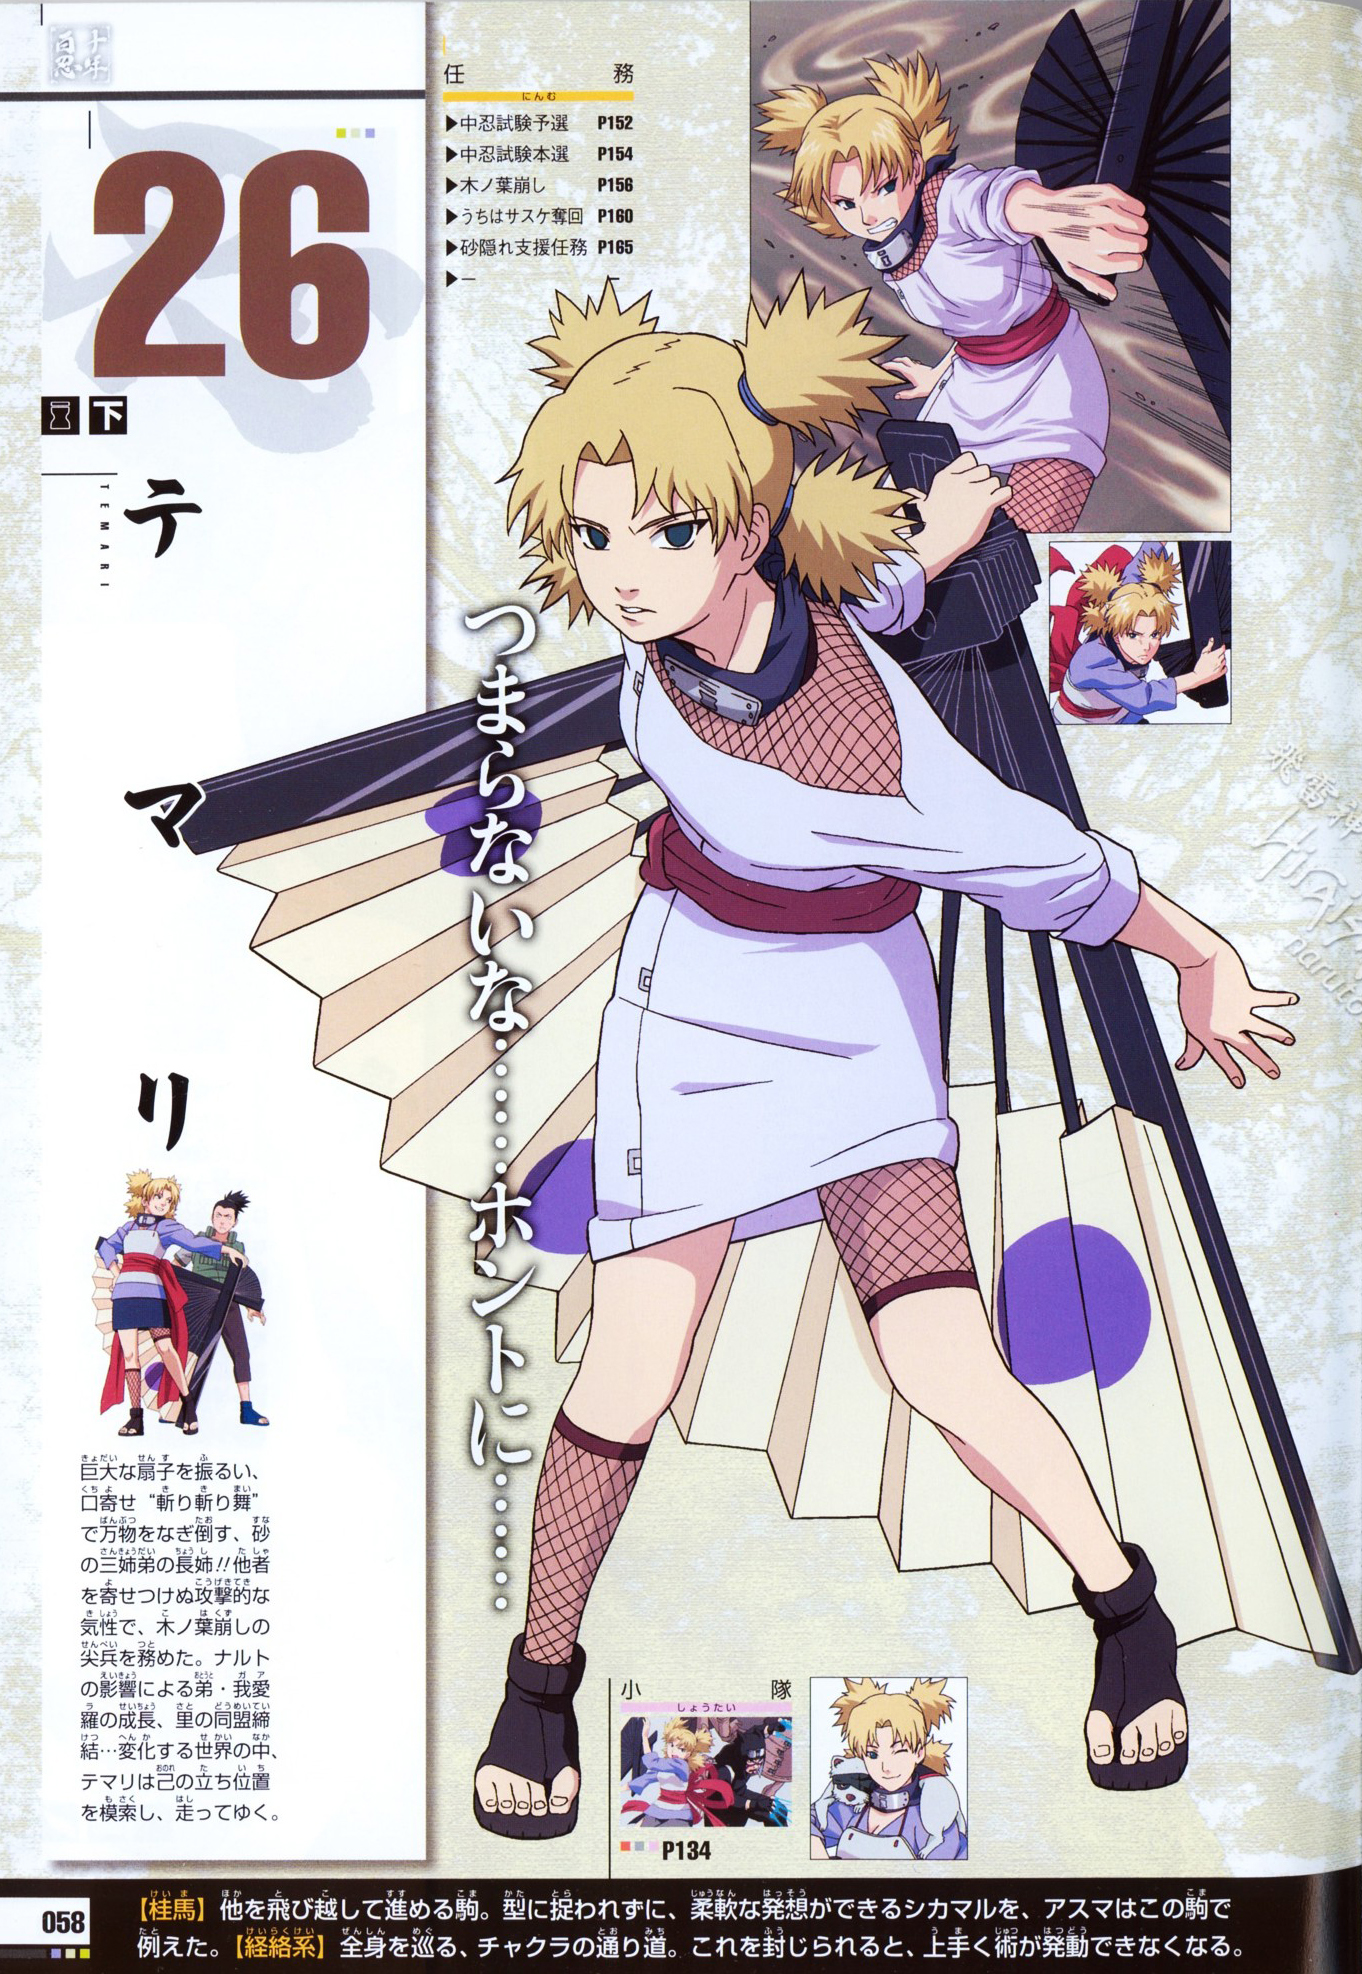 Naruto - Temari - Images Hot - Naruto Temari , HD Wallpaper & Backgrounds